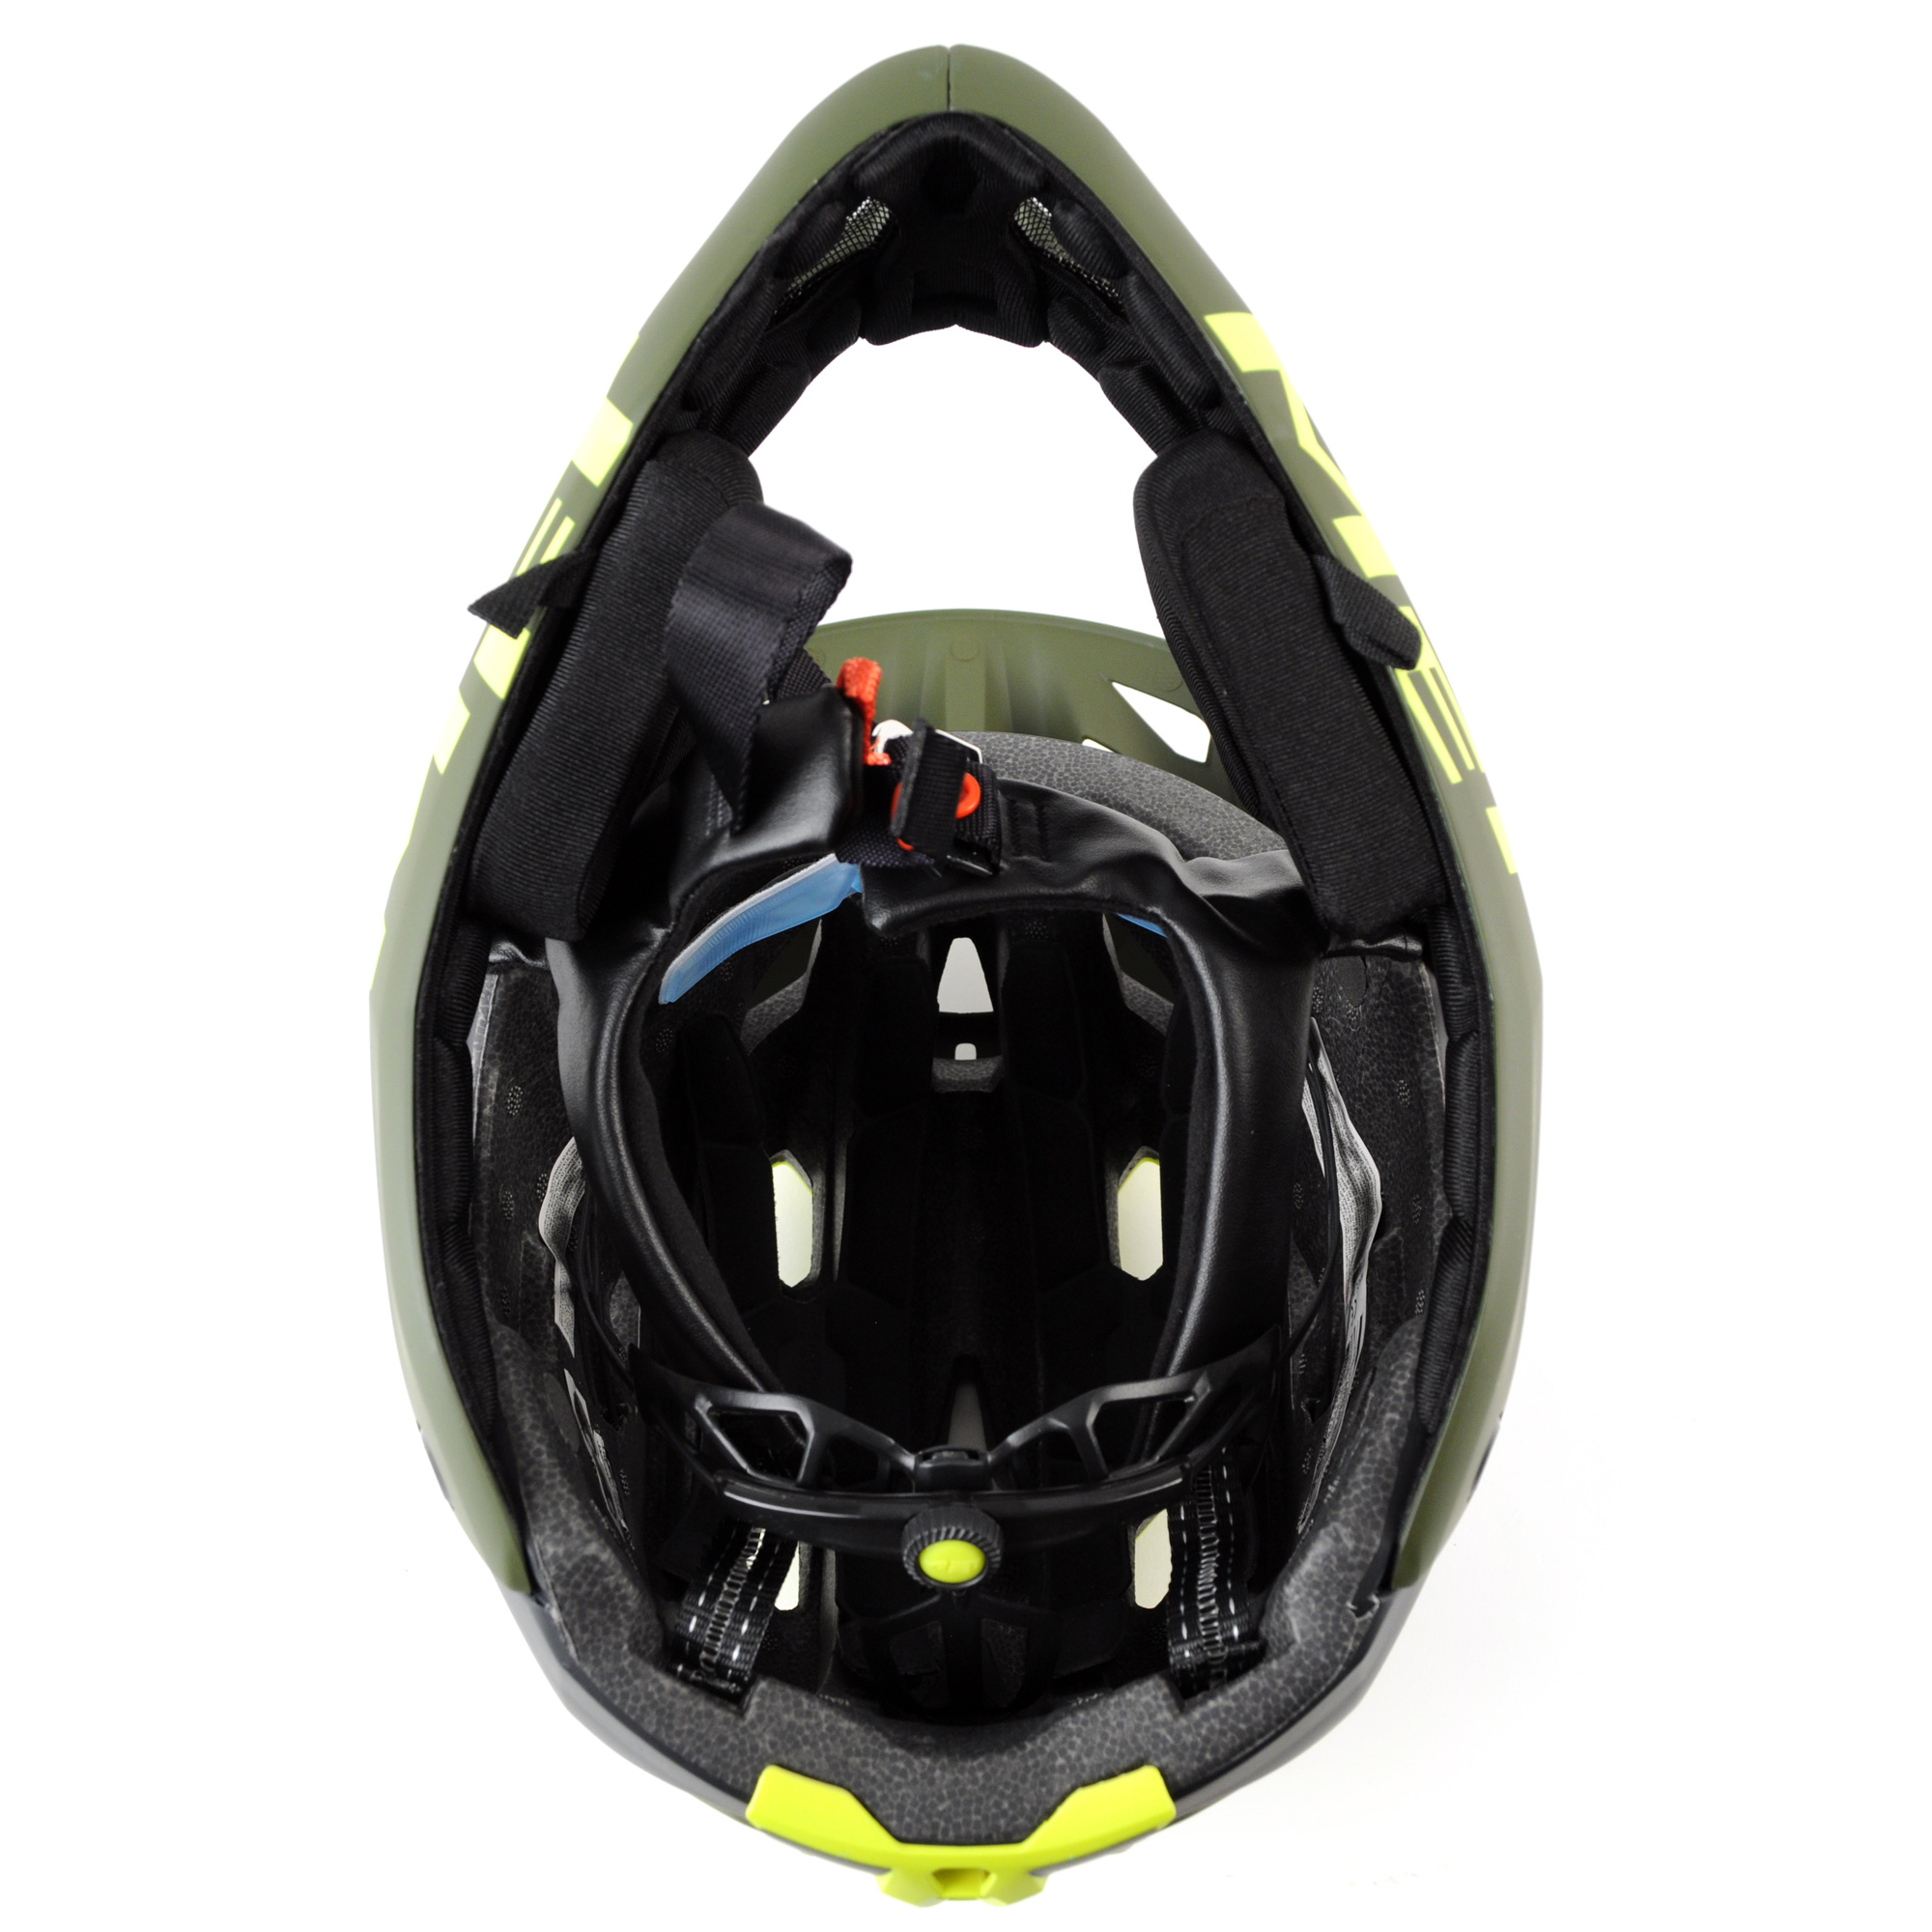 MET Parachute Mountain Bike Full Face Helmet | eBay